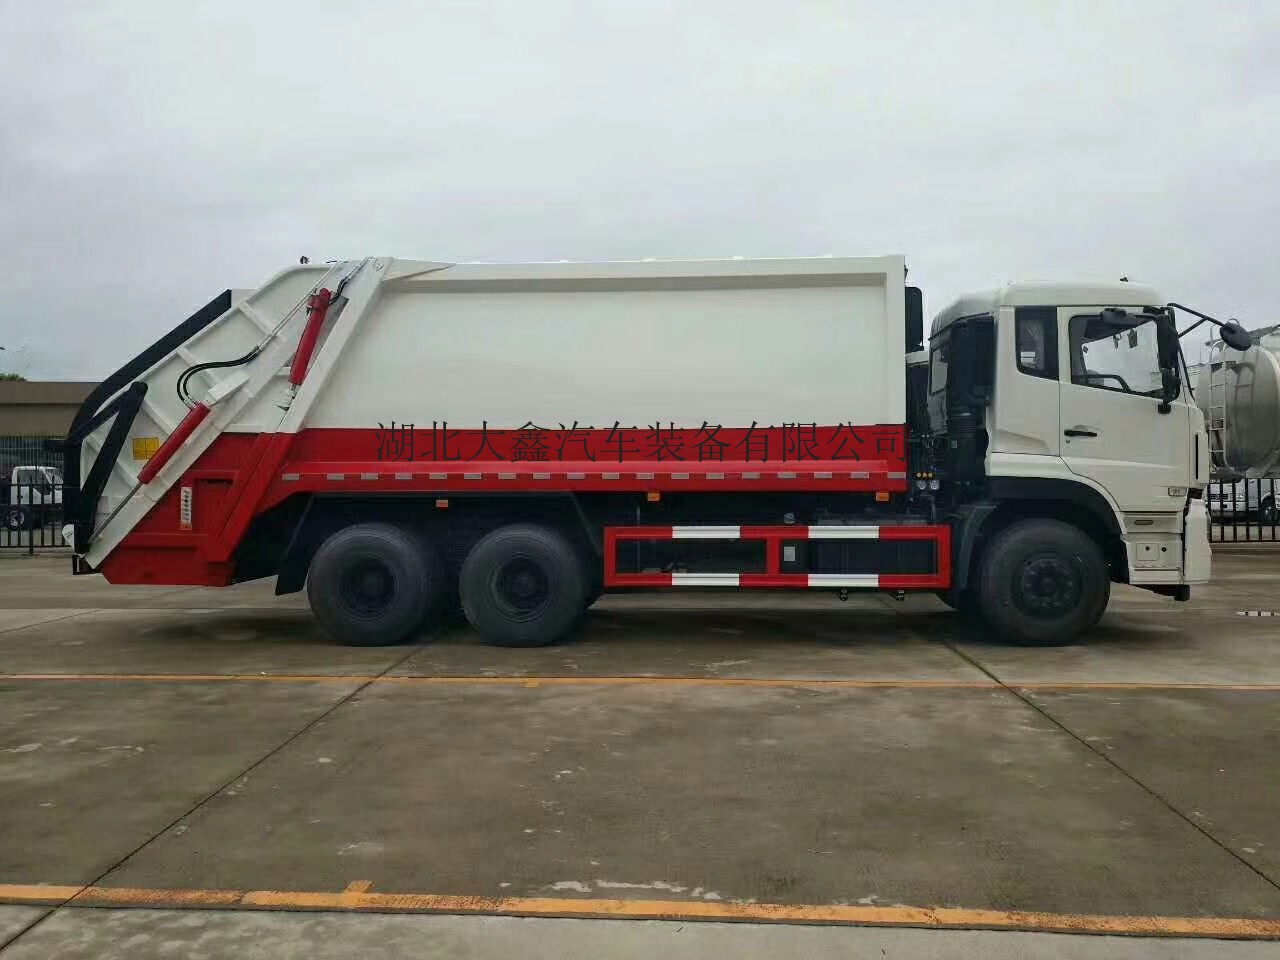 河北省地方天龙20方压缩垃圾车-大型环卫垃圾车厂家报价多少